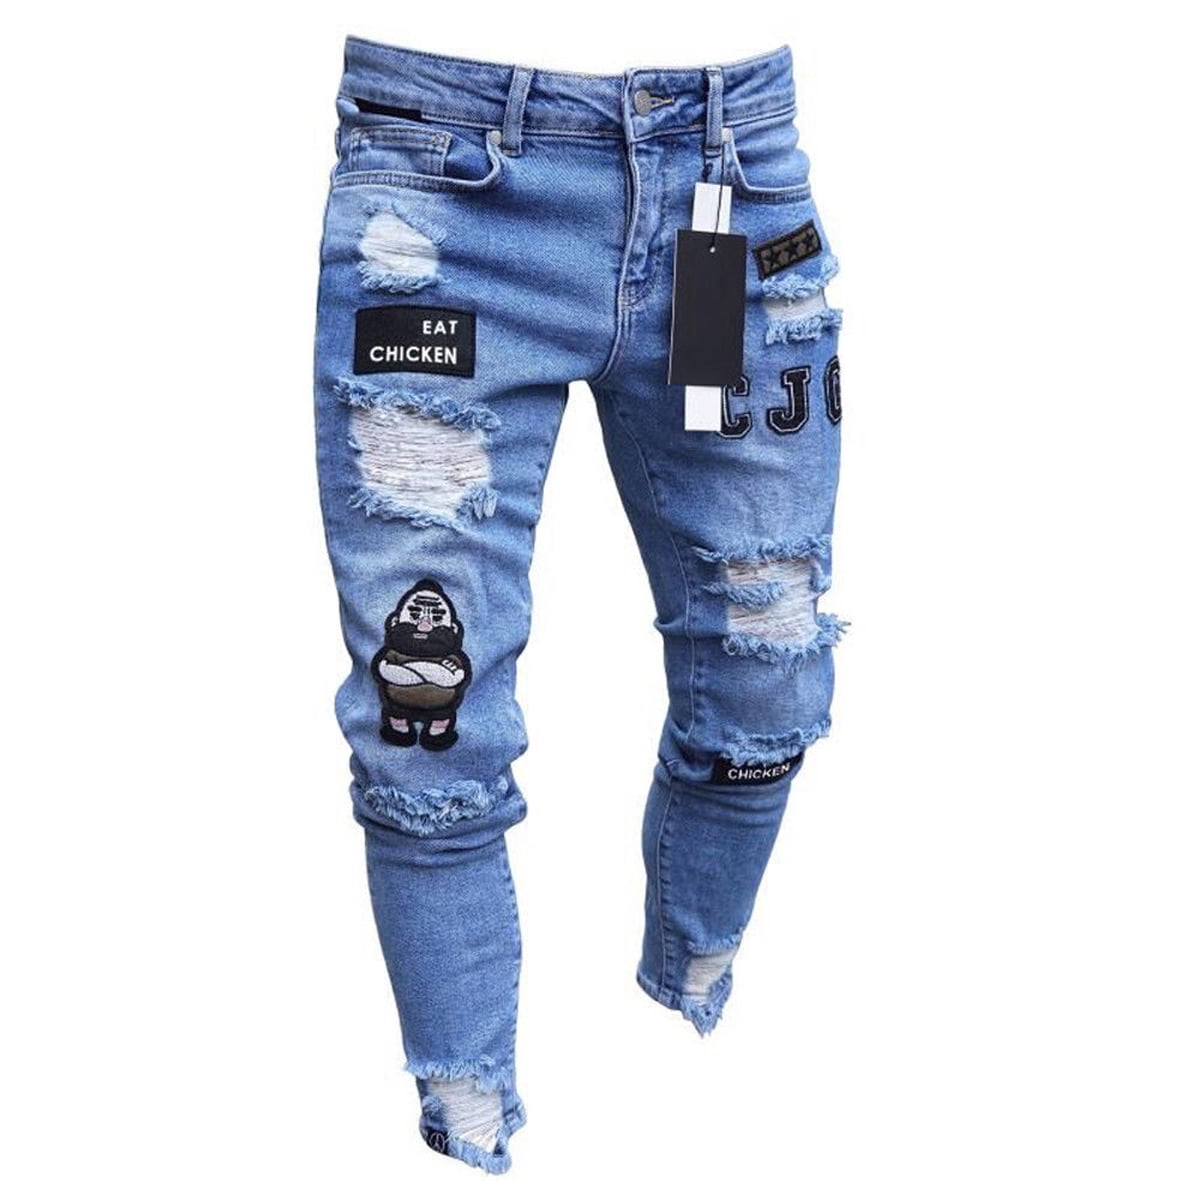 Mens Stretch Ripped Skinny Jeans Distressed Frayed Fit Biker Denim Pants - Walmart.com